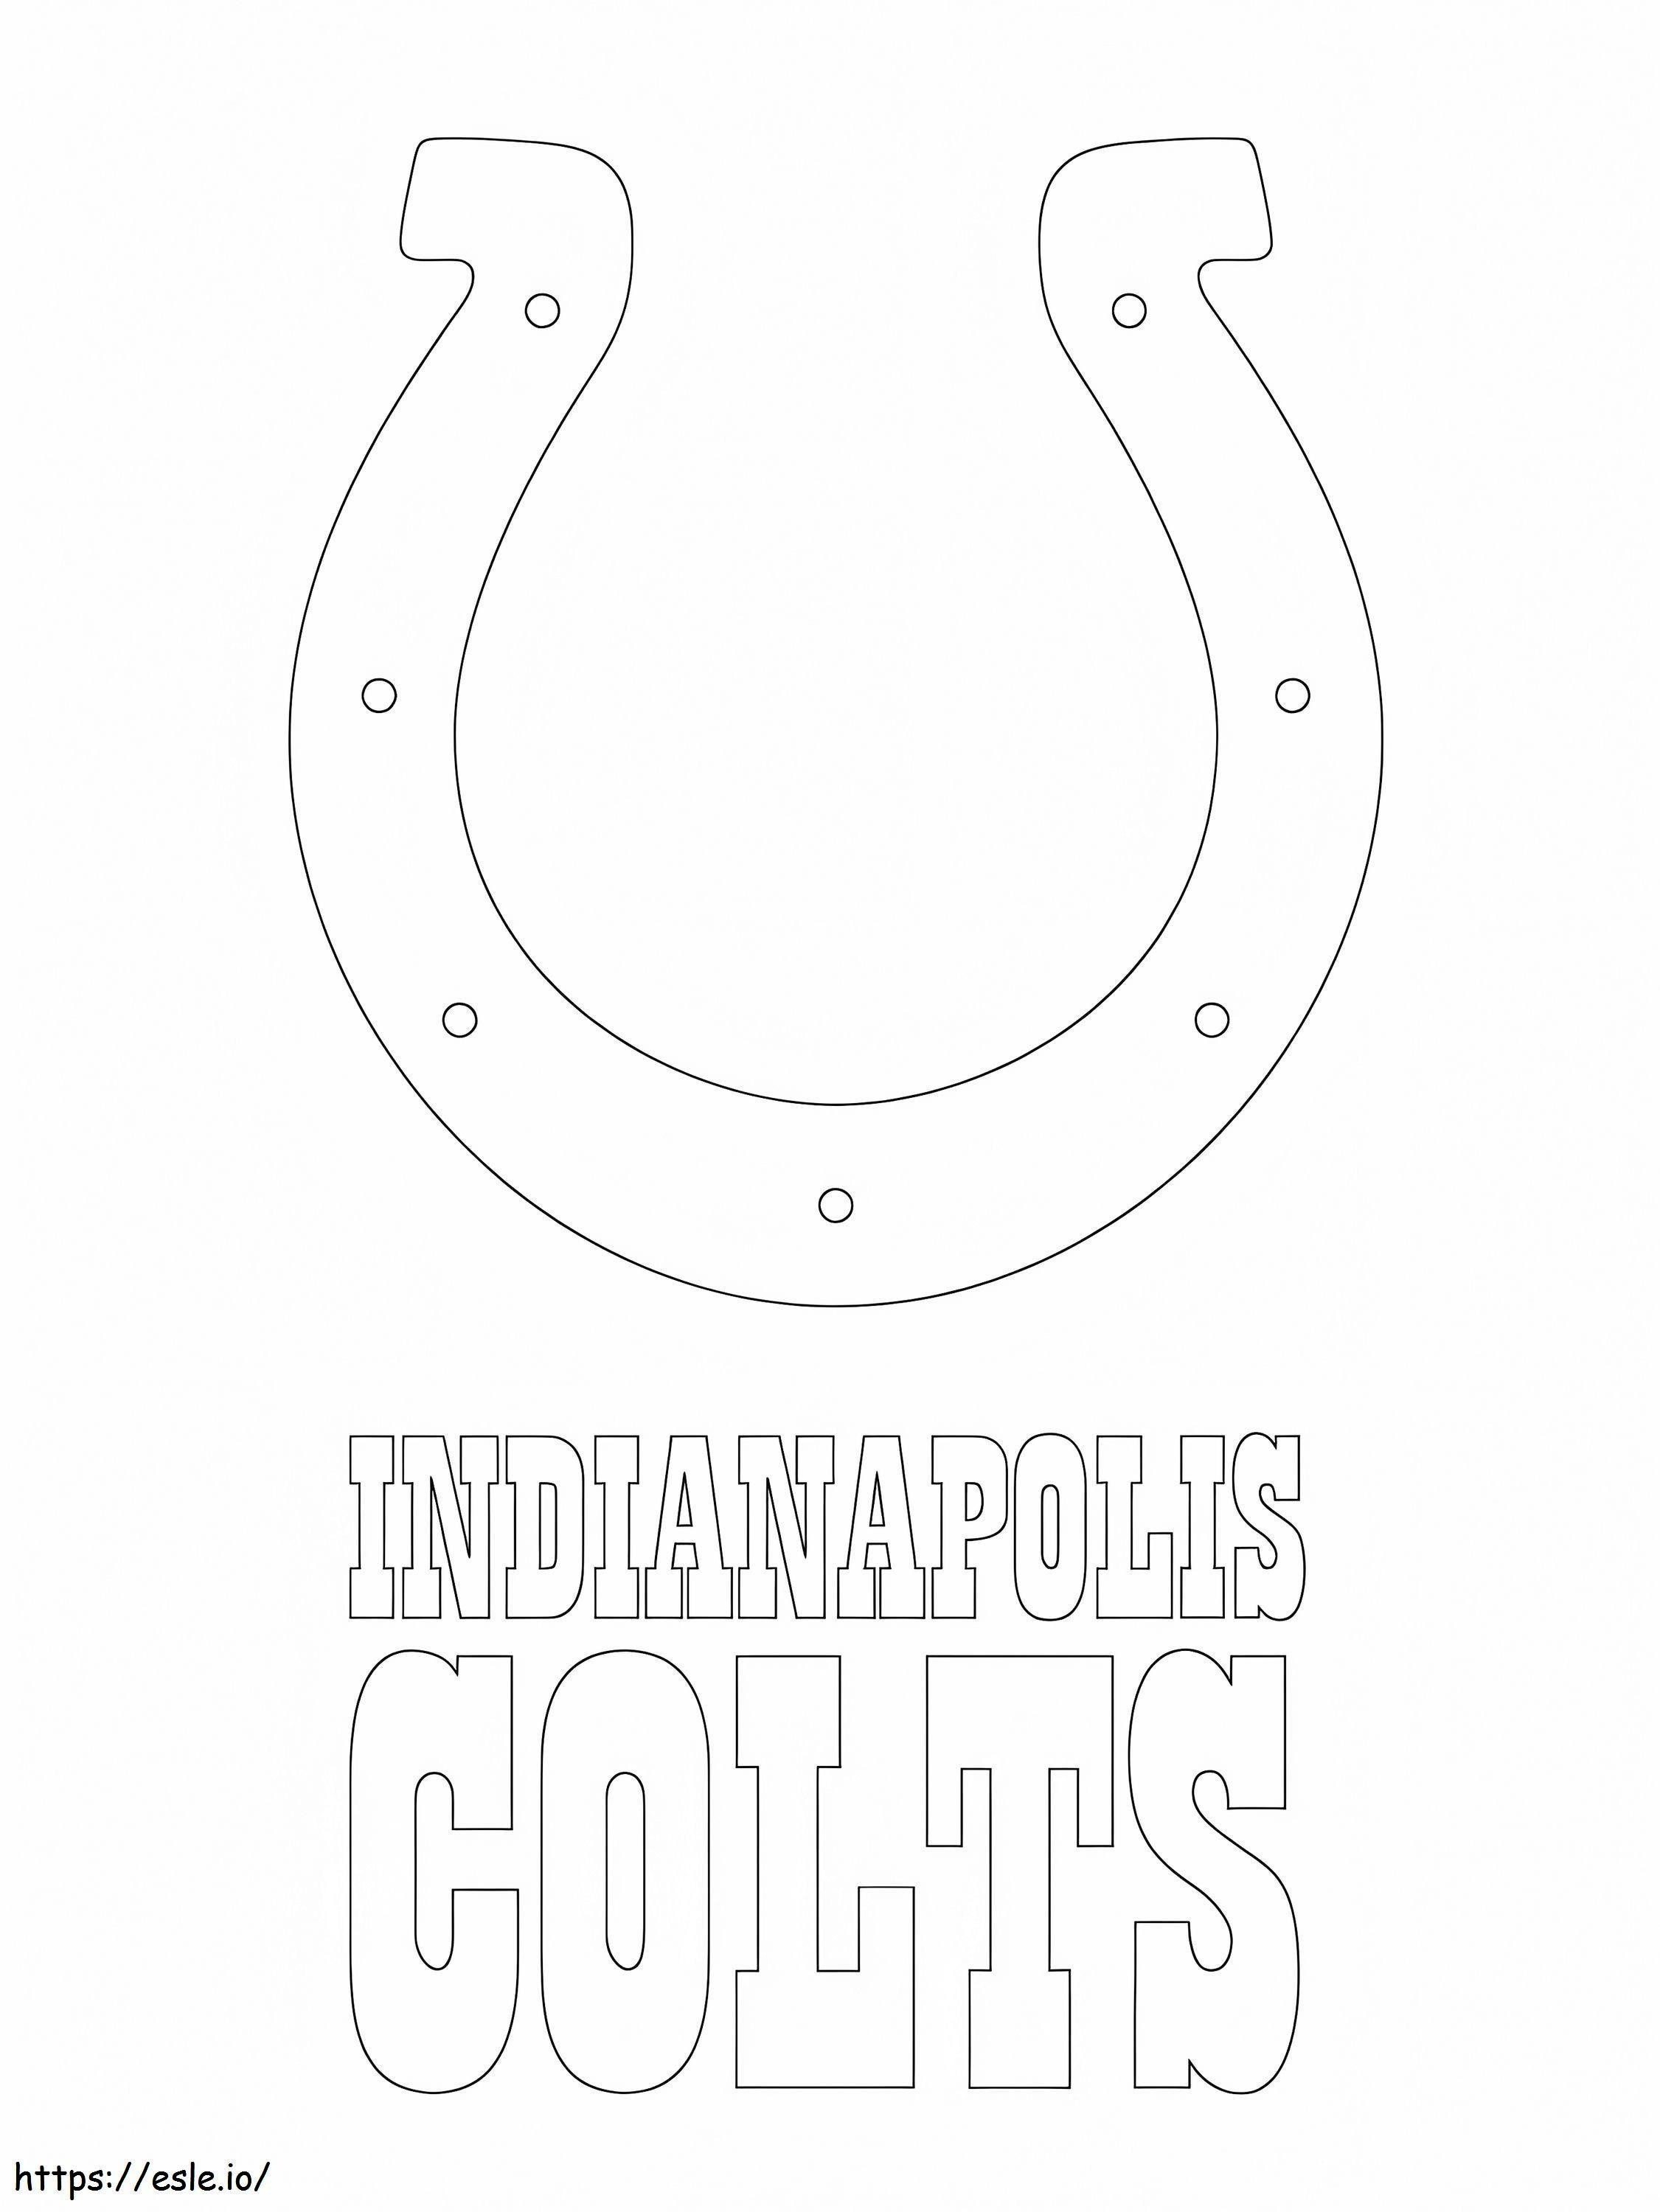 Logo degli Indianapolis Colts da colorare